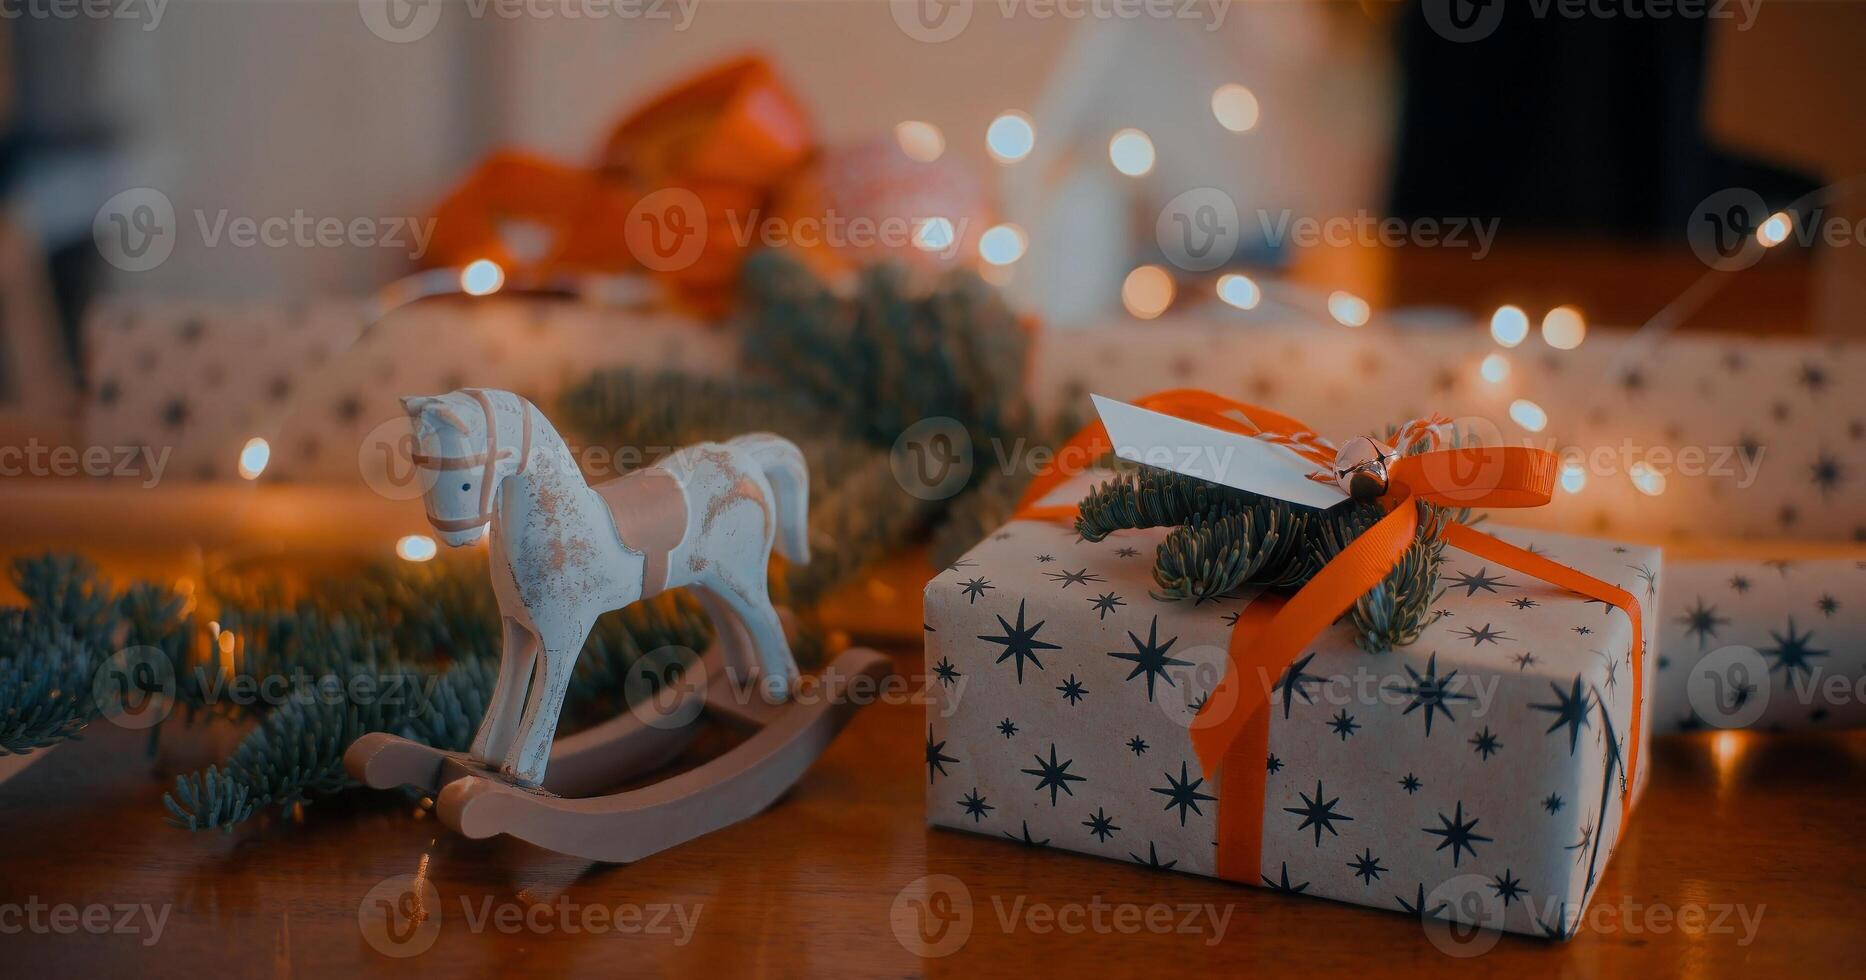 caixa de presente de Natal ou ano novo com galhos de árvores e decorações de Natal na mesa de madeira, fundo de bokeh de luzes de festa cintilantes. foto